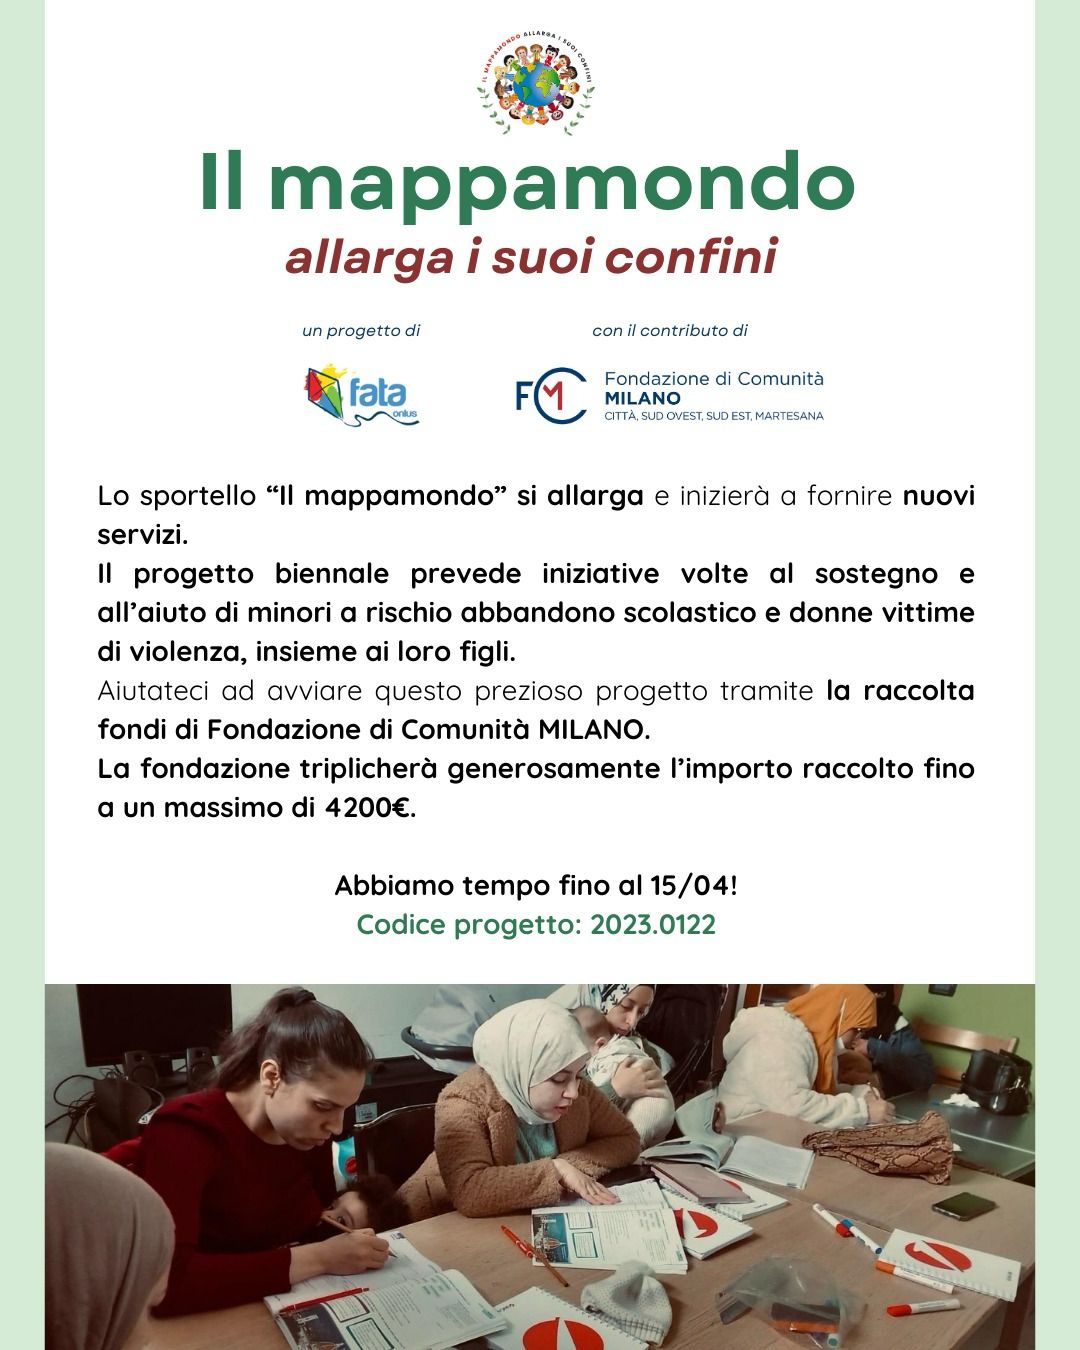 Featured image for “Il mappamondo allarga i suoi confini”